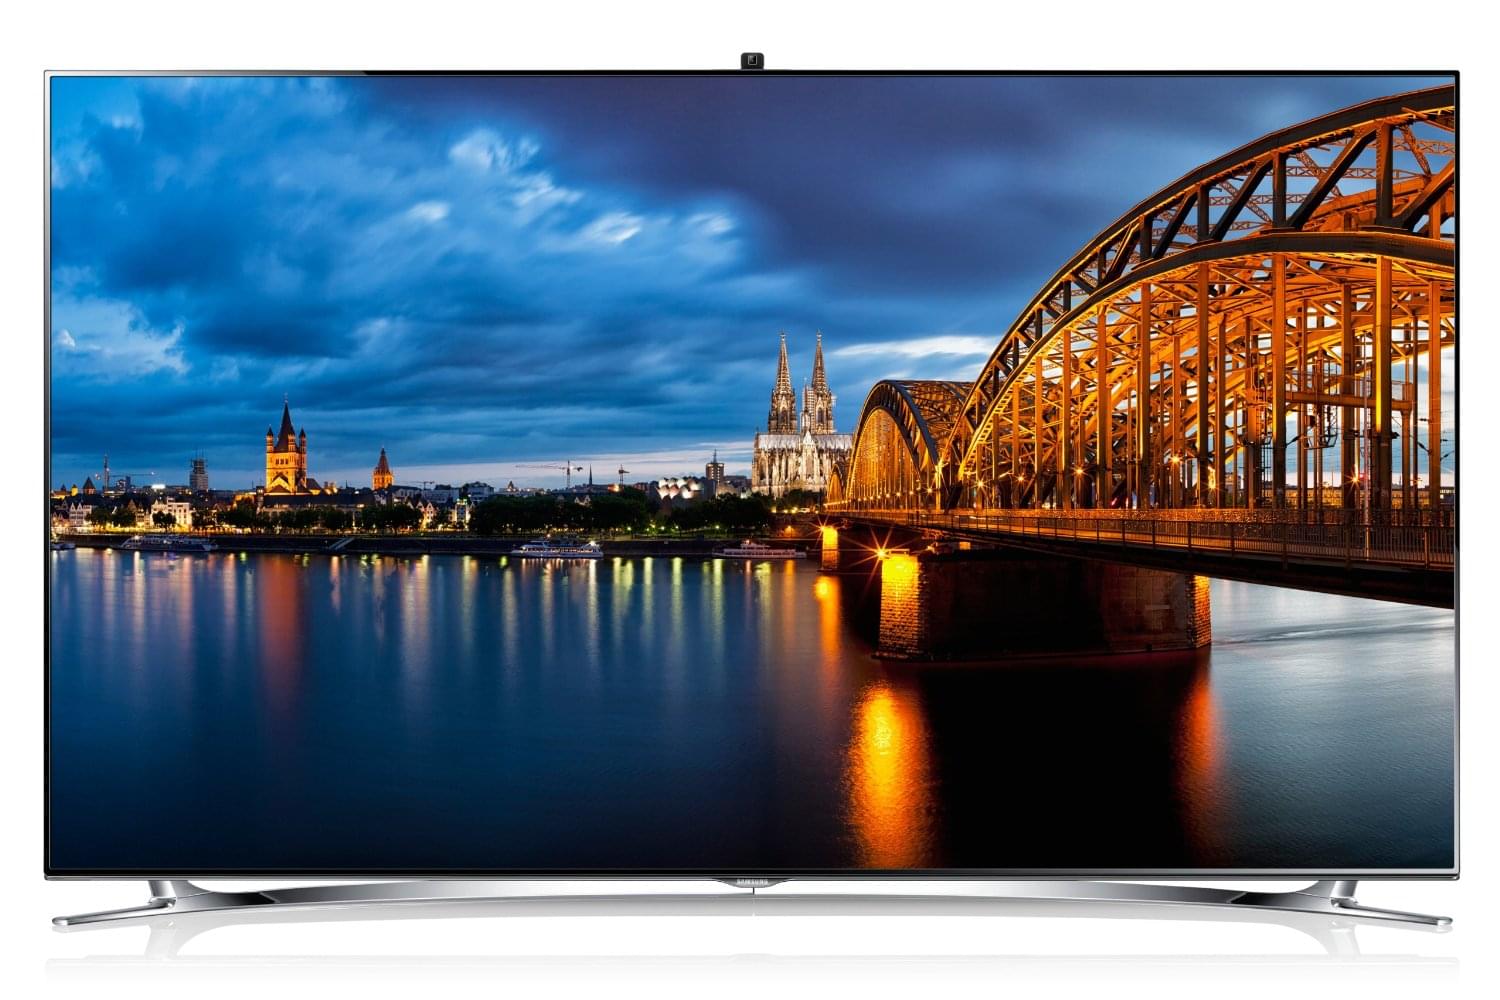 TV Samsung UE46F8000 - 46" (117 cm) LED HDTV 1080p 3D